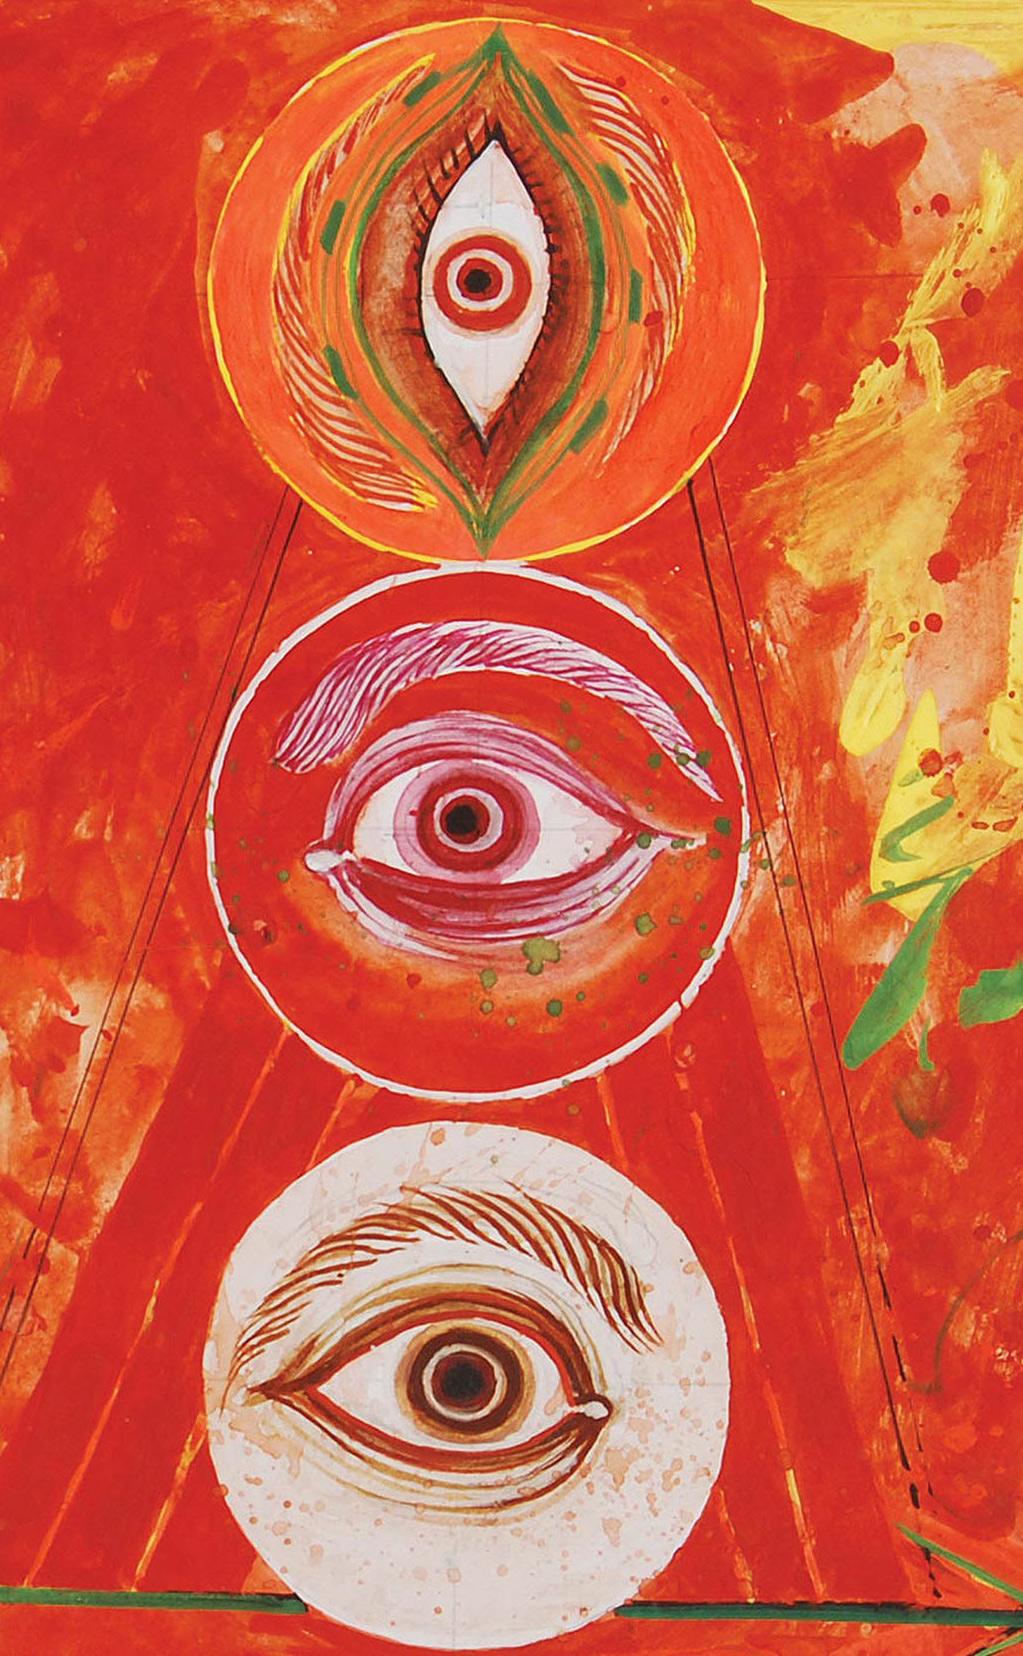 Durga 97, technique mixte sur panneau, rouge, jaune, vert par l'artiste indien « En stock » en vente 3